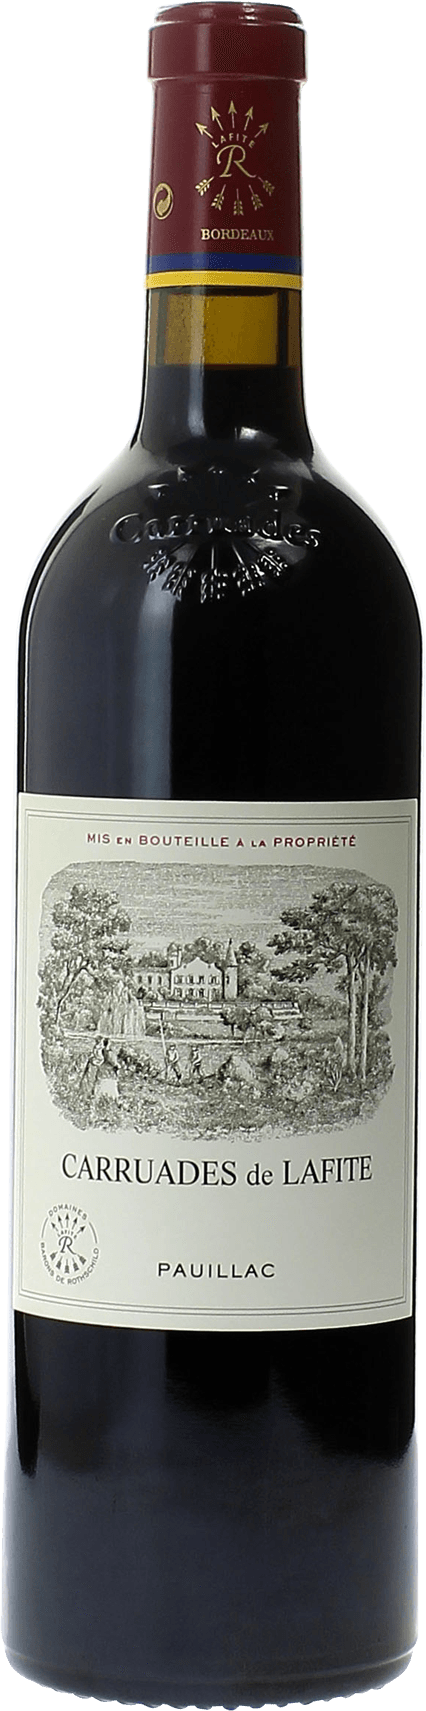 Carruades de lafite 2020 2me vin de LAFITE ROTHSCHILD Pauillac, Bordeaux rouge